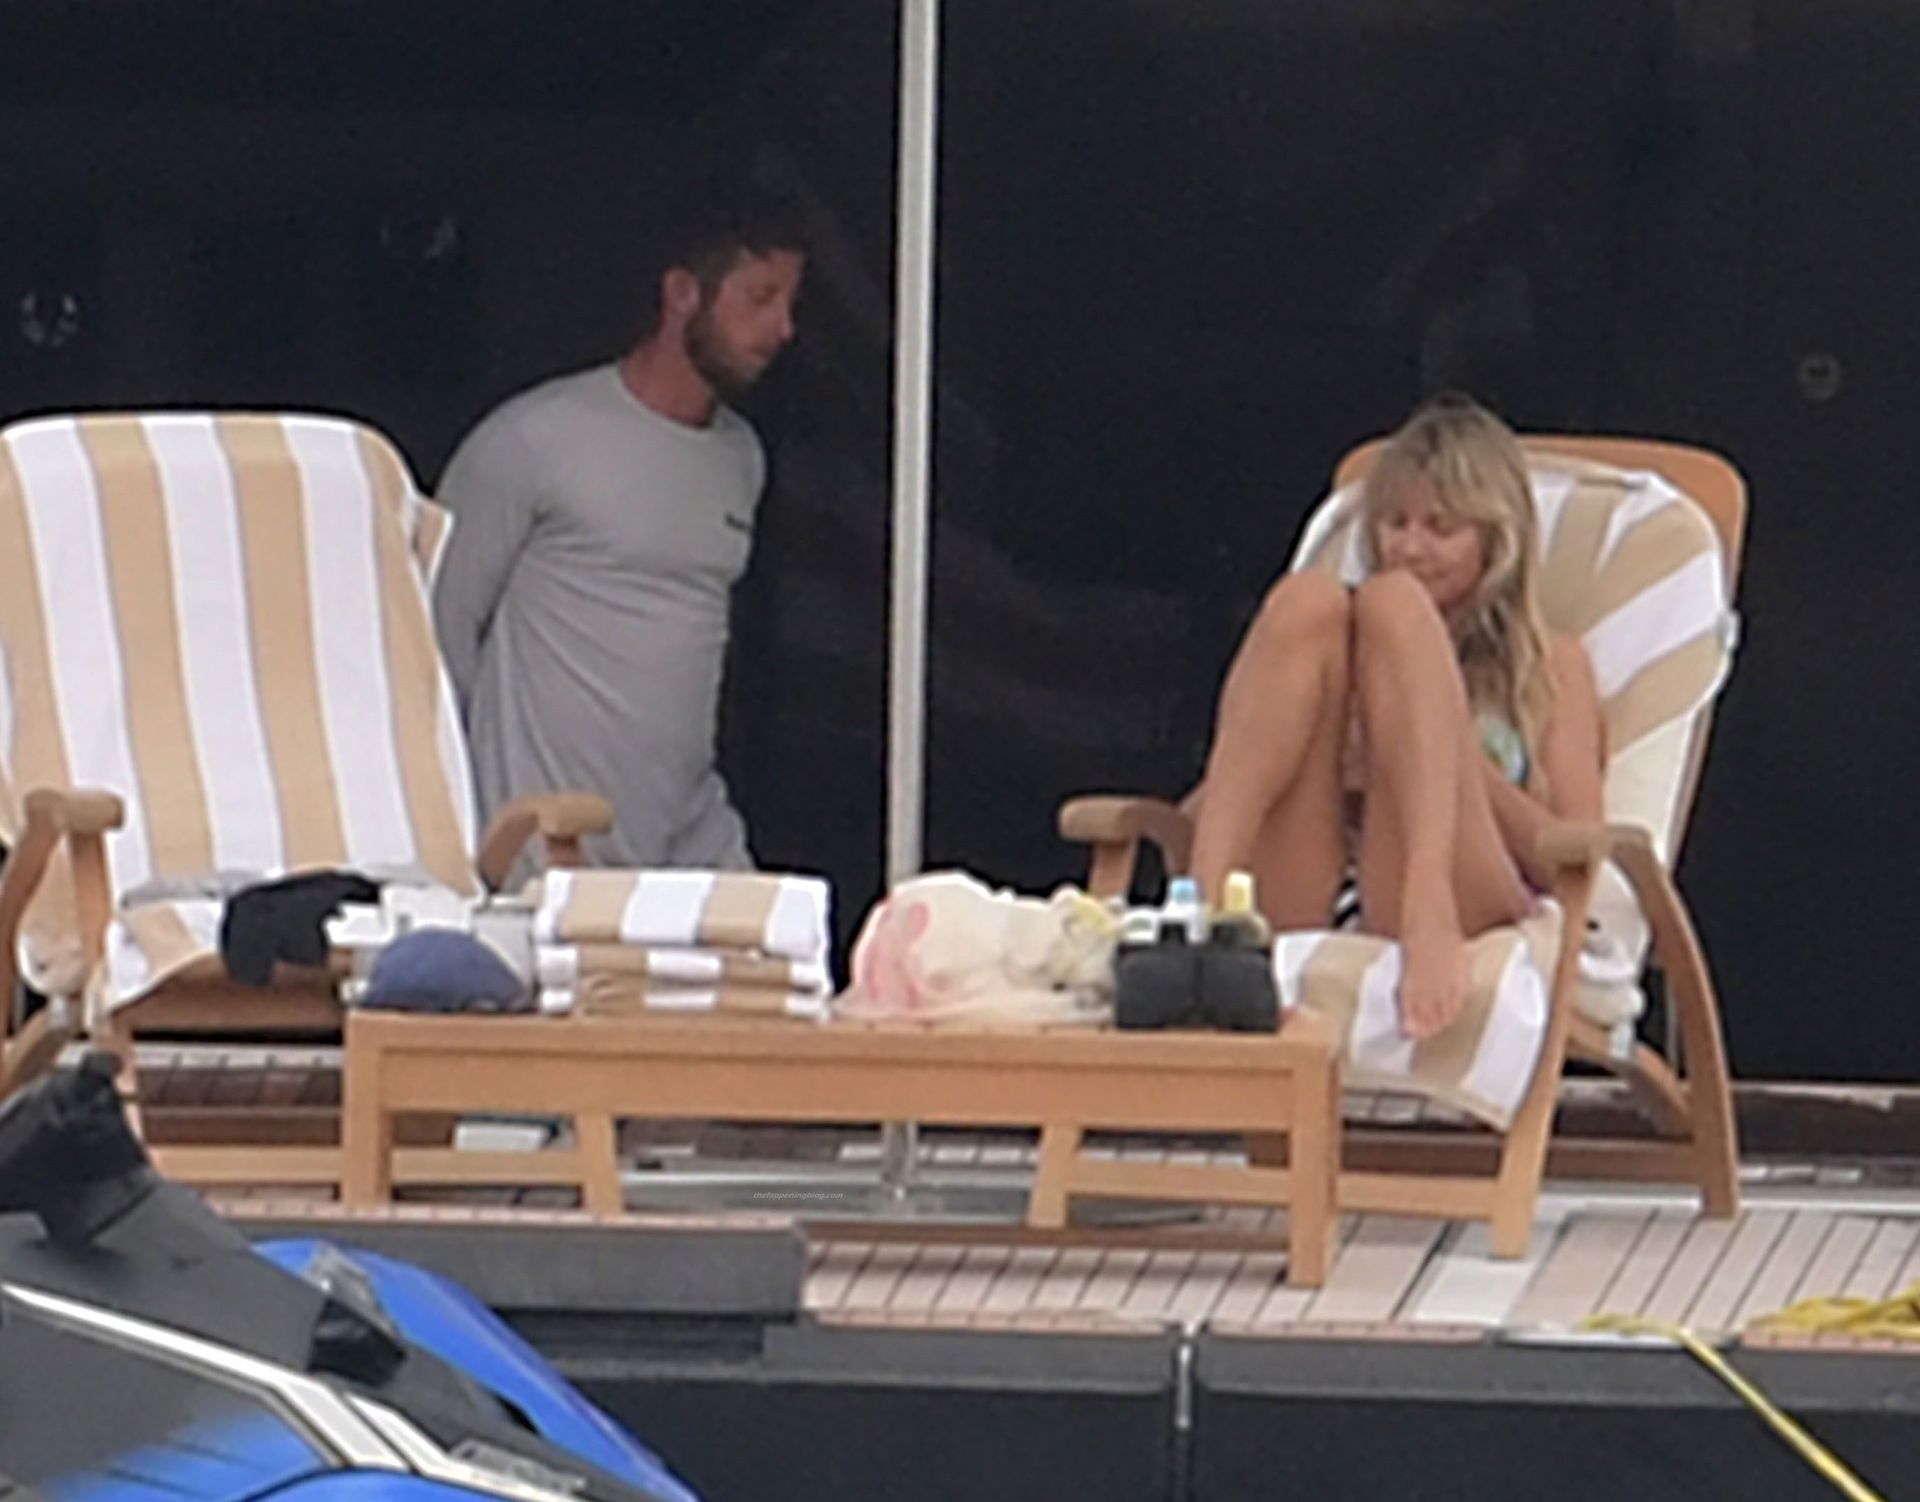 Heidi Klum  Tom Kaulitz Show Some PDA Out on Their Family Holiday in Capri (39 Photos)